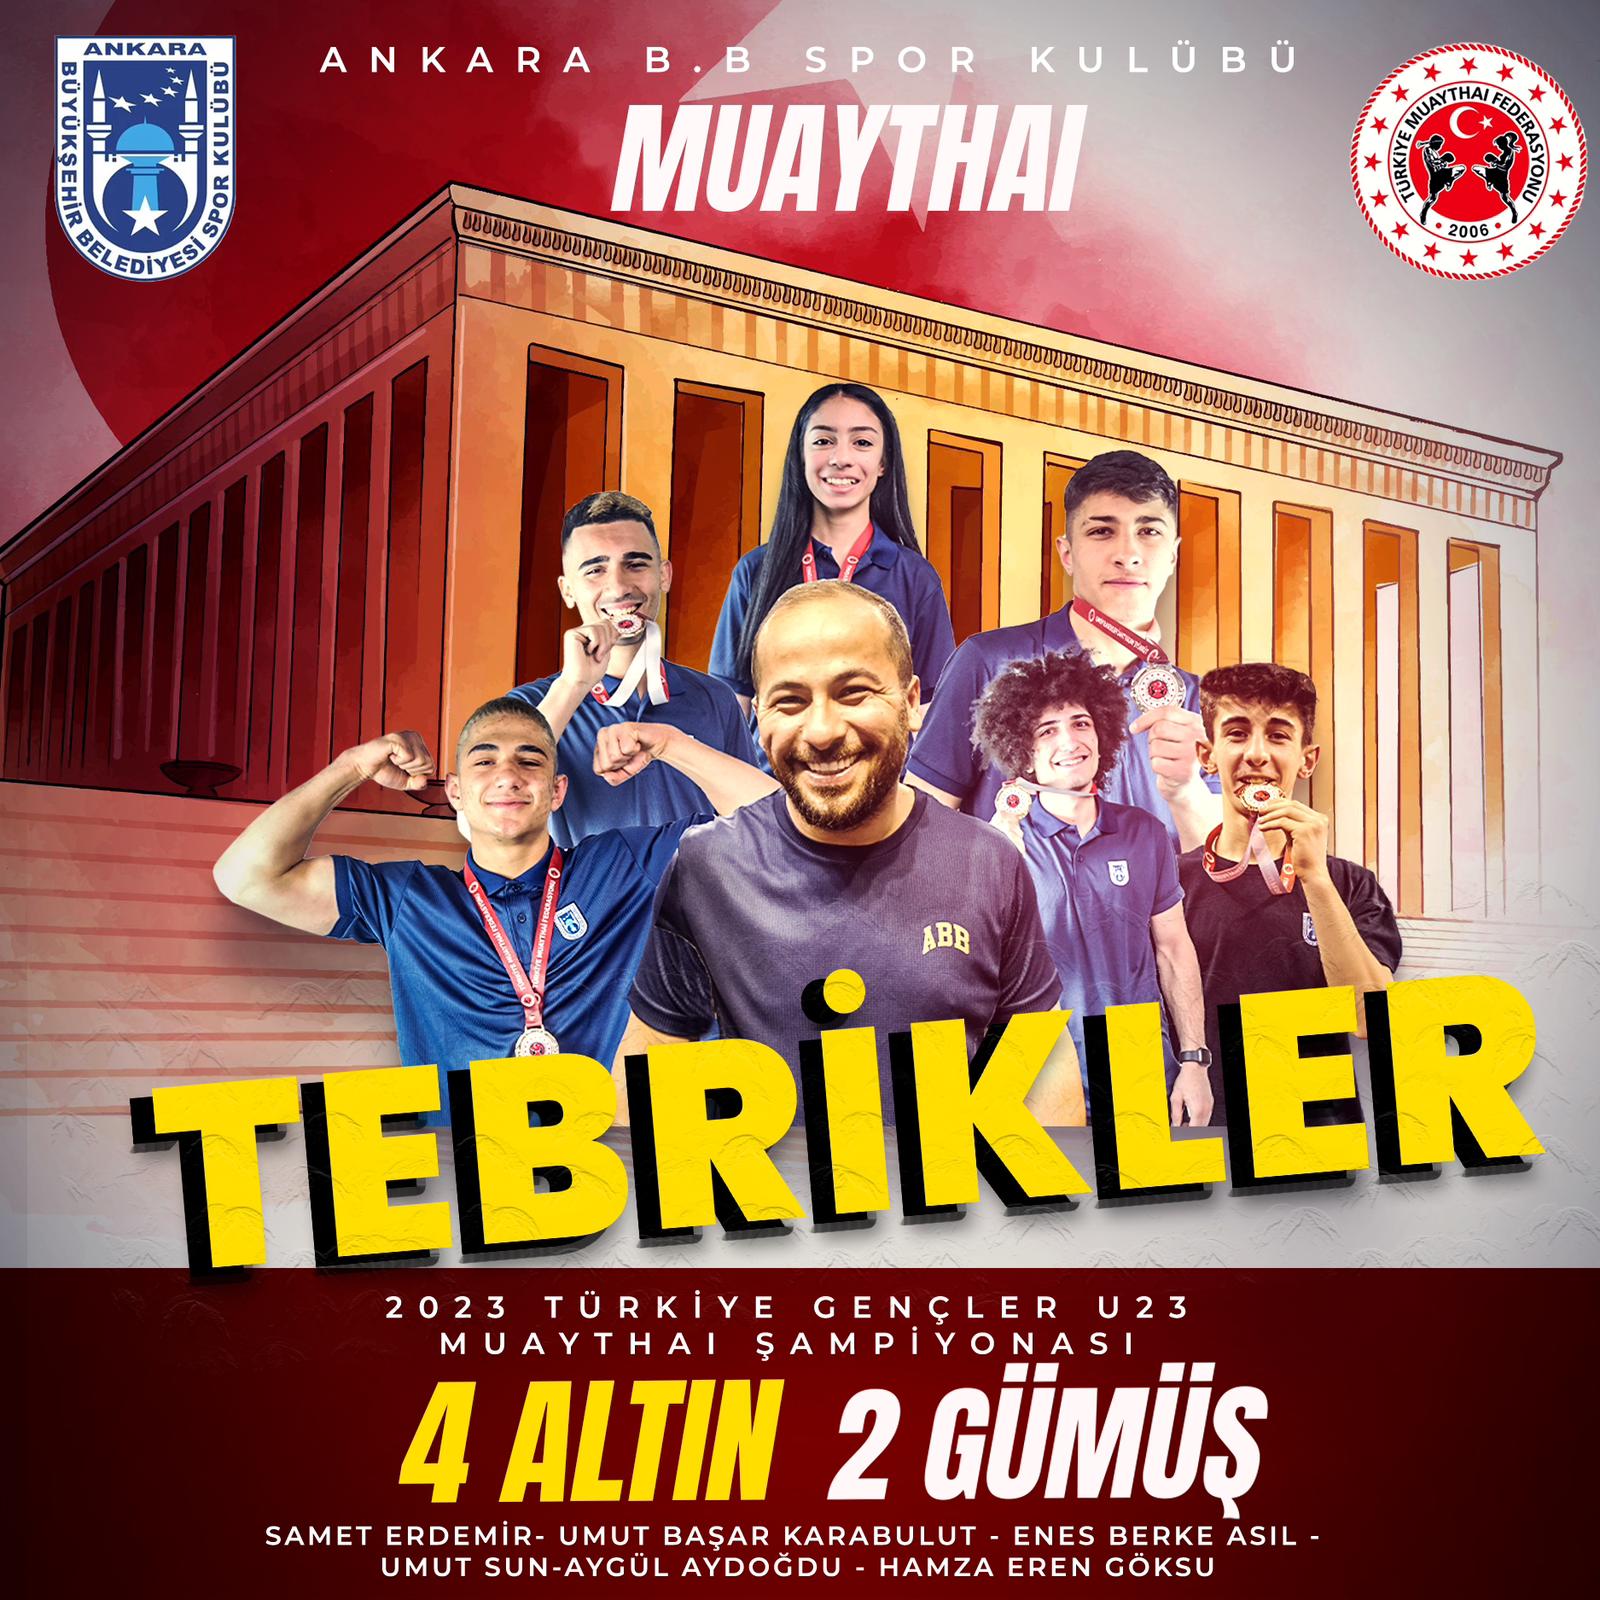 Ankara B.B Spor Kulübü Muaythai Alt Yapısı Fetih Spor akademisi Rüzgarı